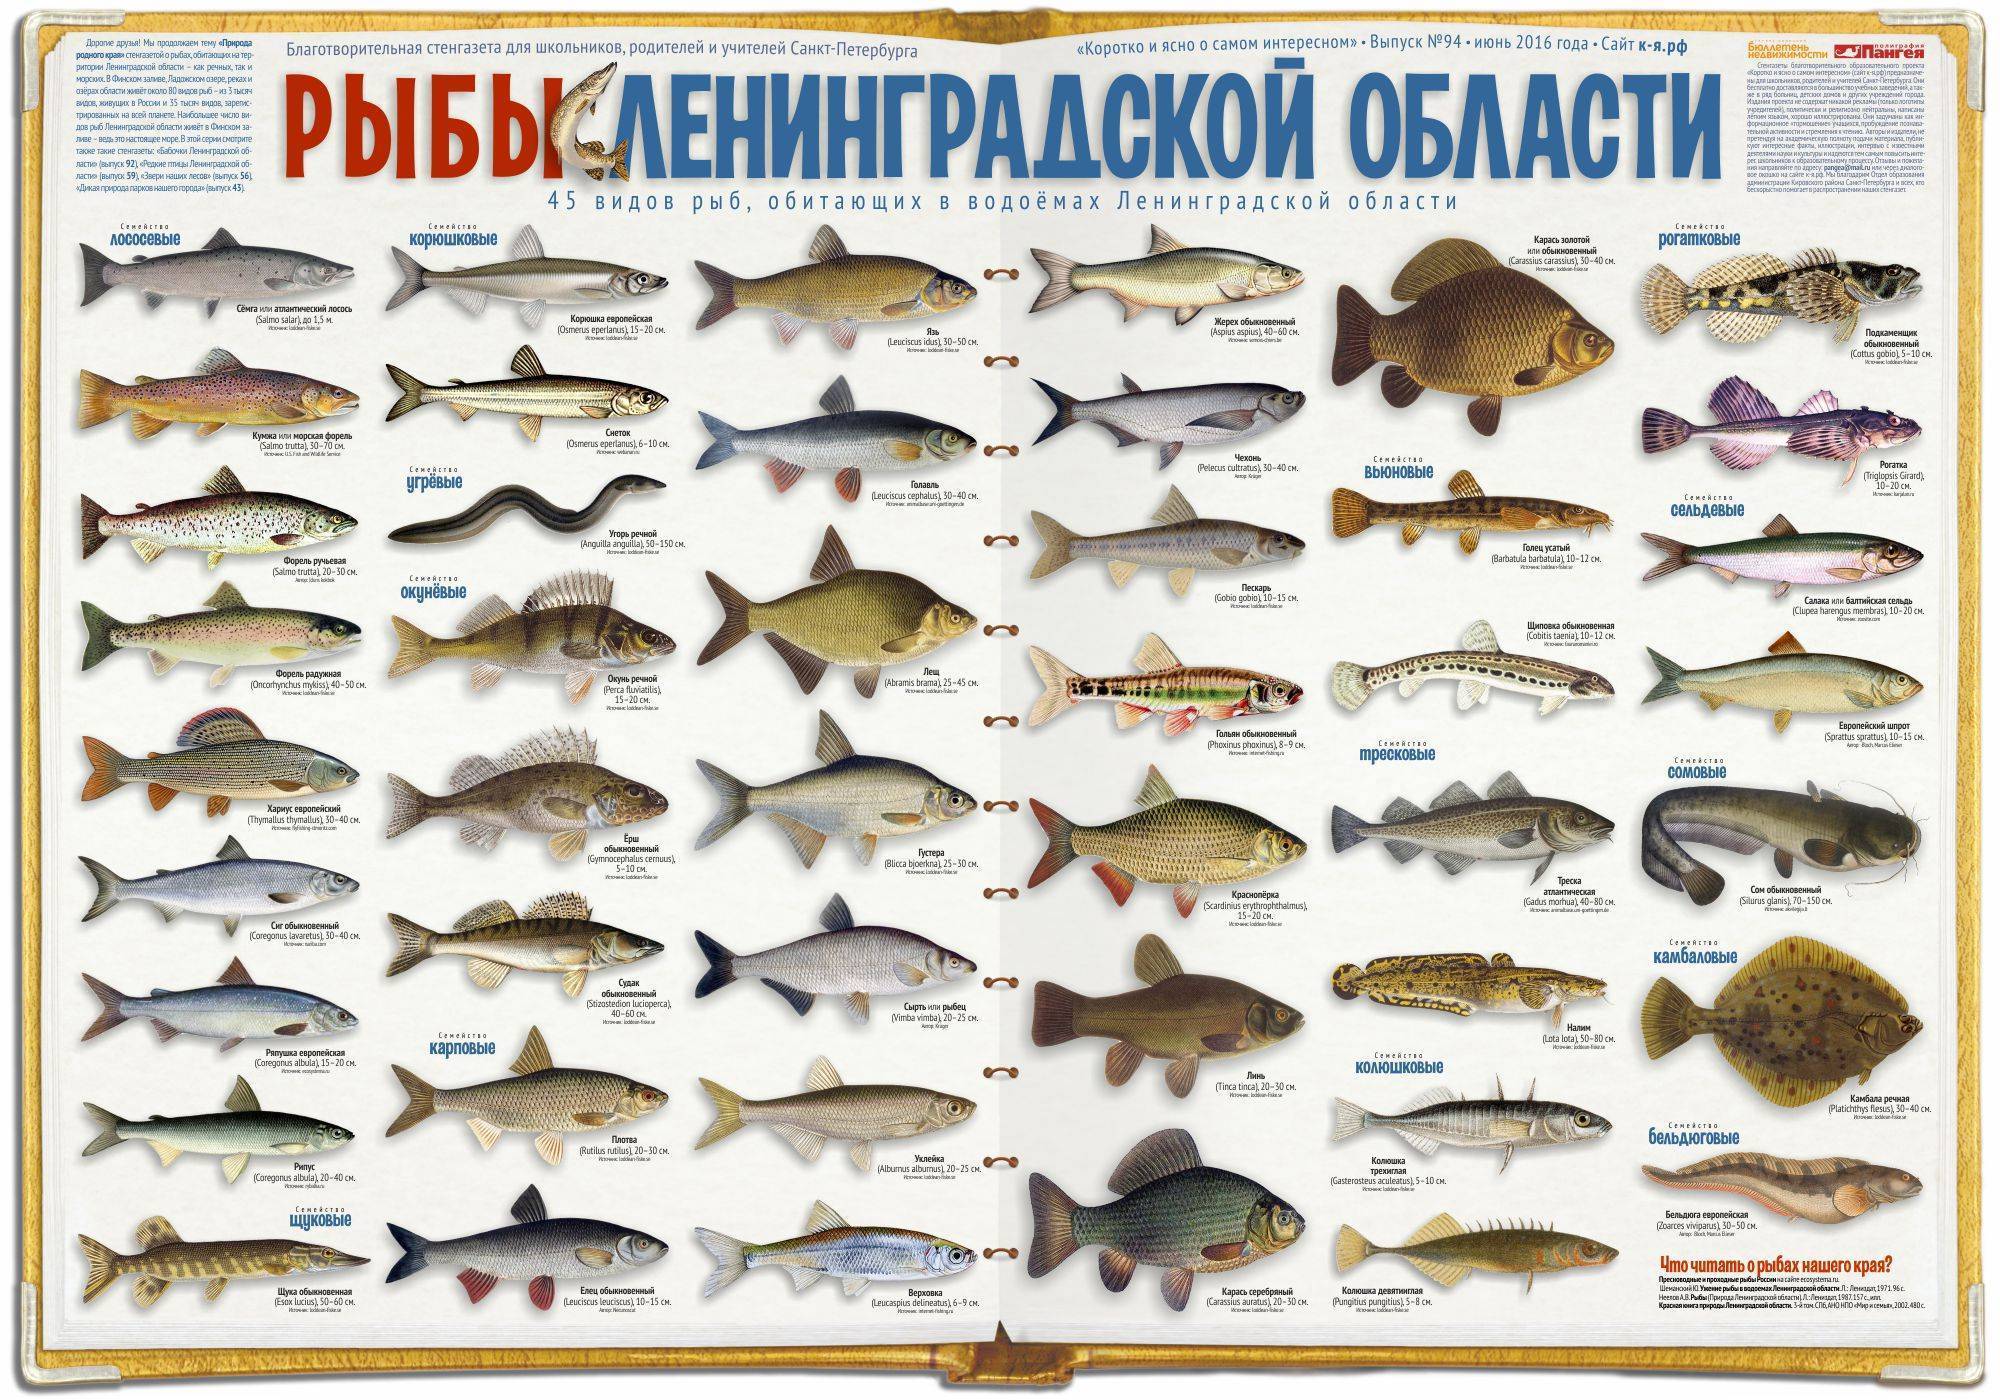 Список белой рыбы с описанием и фото